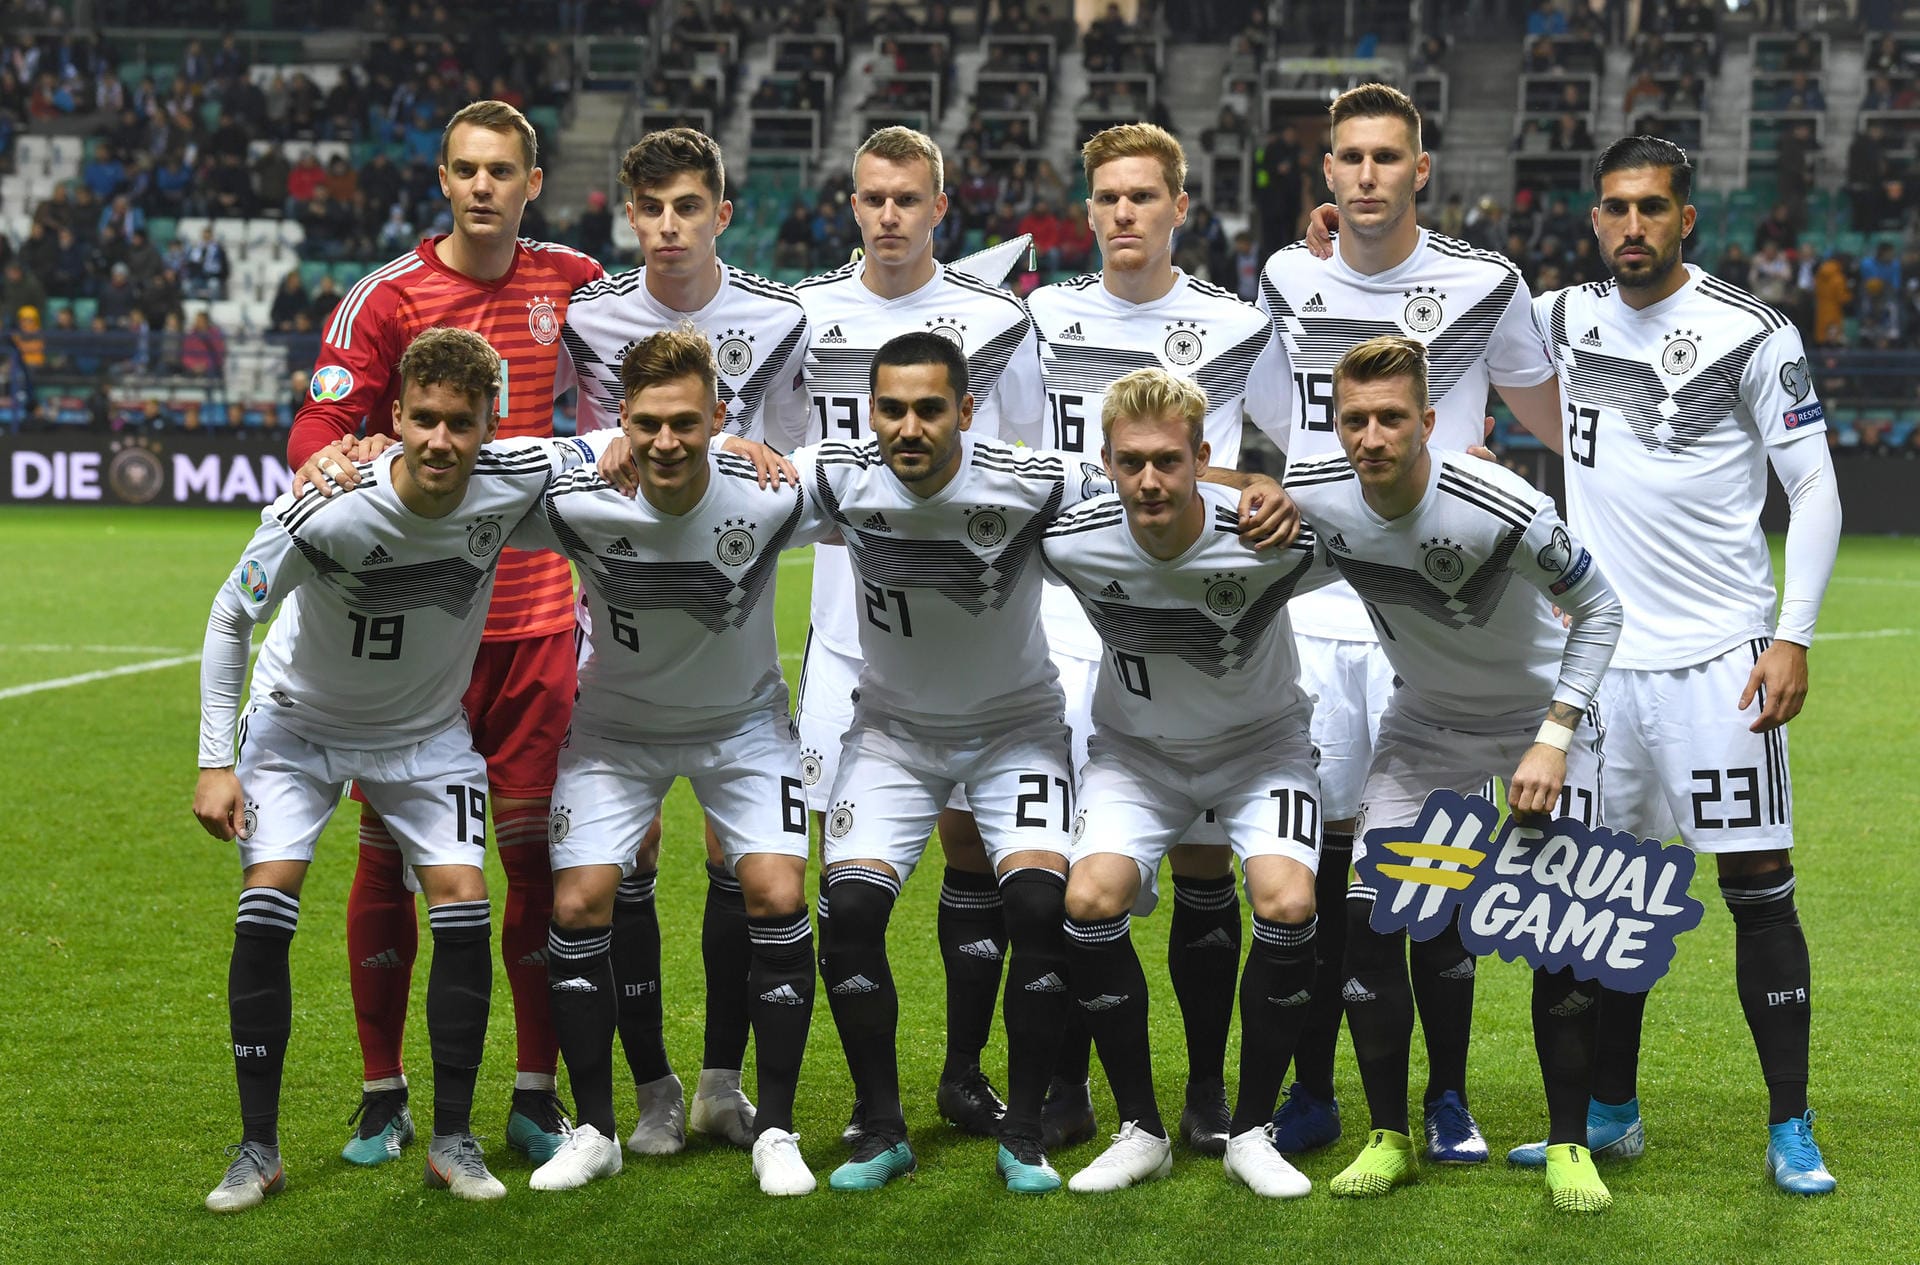 Trotz einer schwächeren erste Hälfte hat die deutsche Fußball-Nationalmannschaft am Ende locker mit 3:0 in Estland gewonnen. Dabei überragte ein Mittelfeldstratege. t-online.de hat die Note der DFB-Spieler zum Durchklicken.